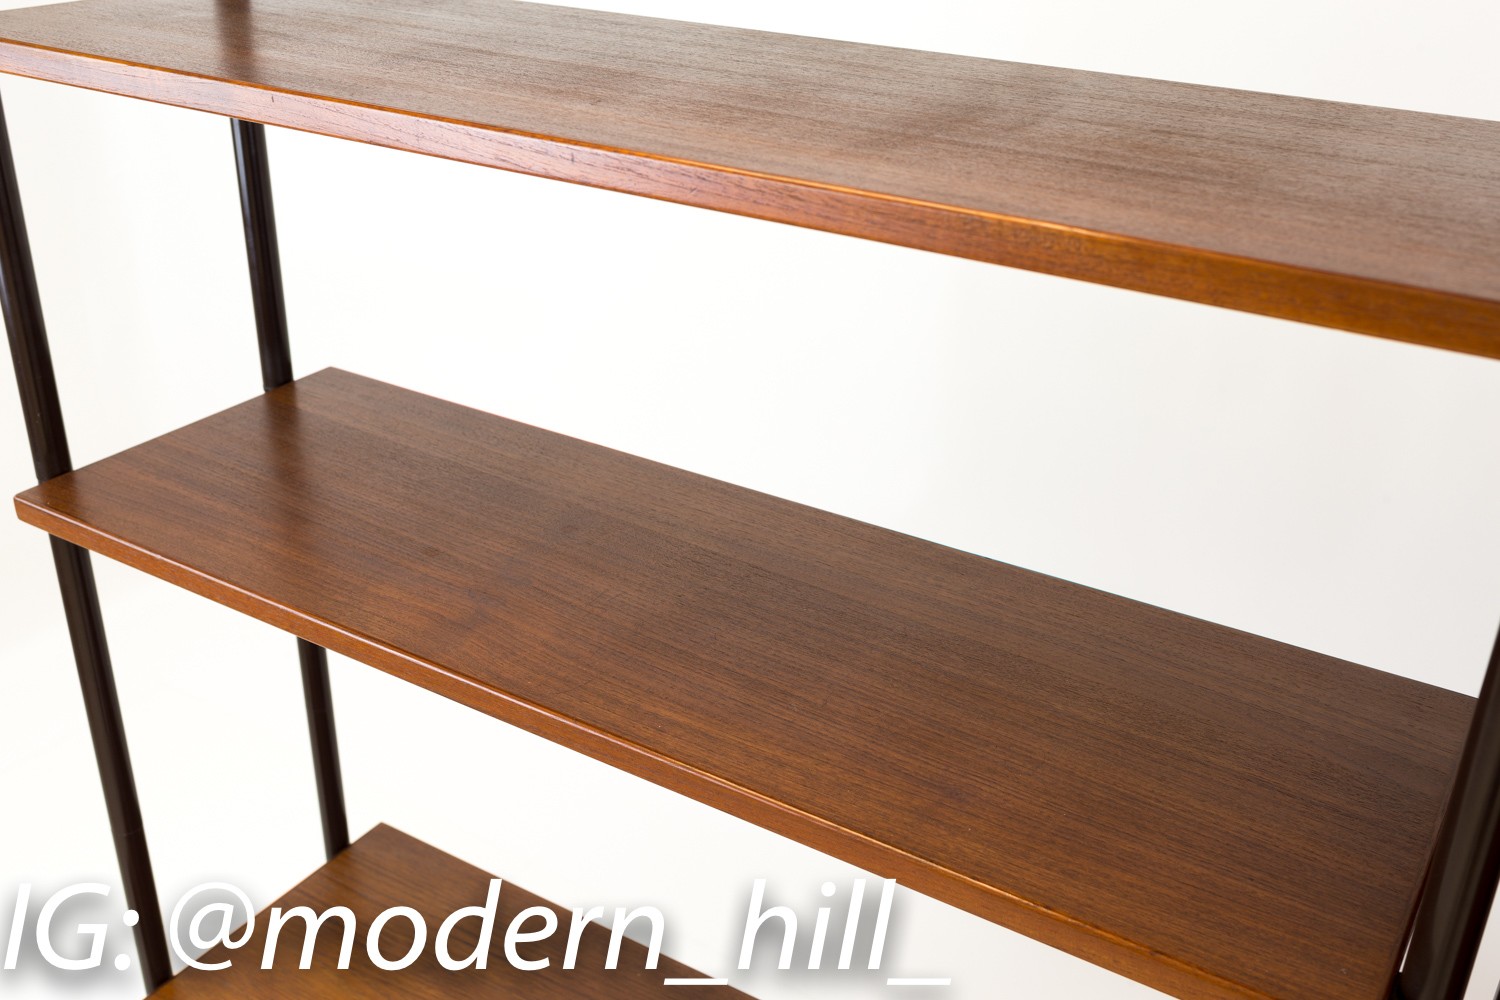 Lyby Mobler Danish Teak Mid Century Modern Freestanding Wall Unit Shelves